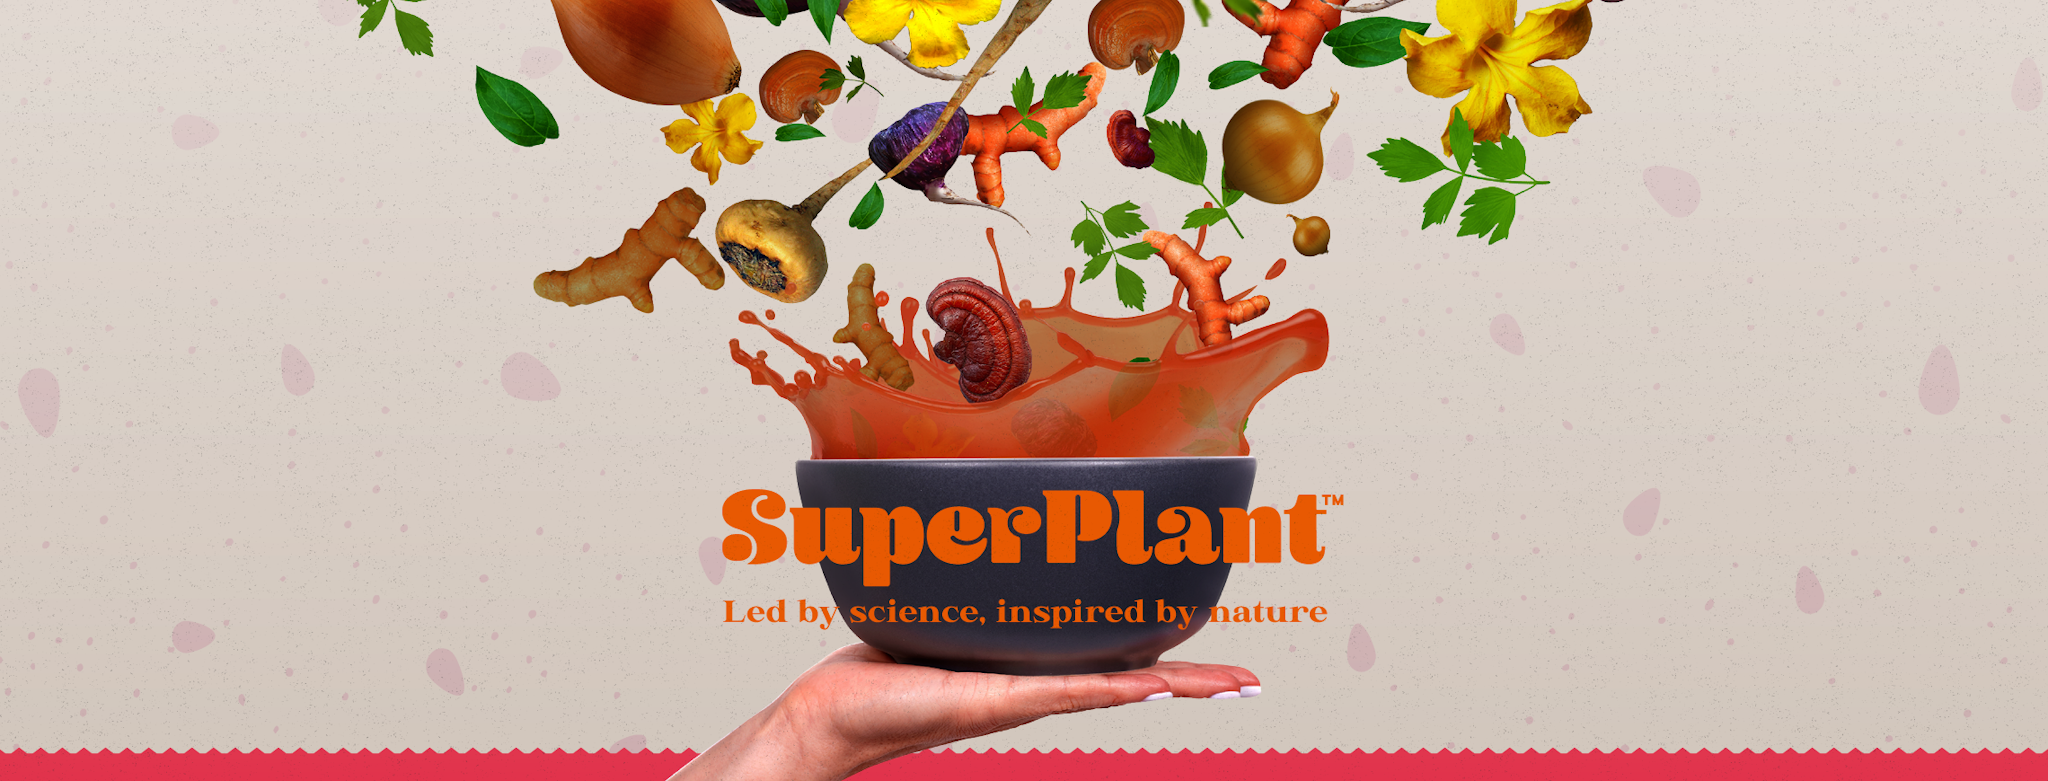 SuperPlant Kitchen's banner